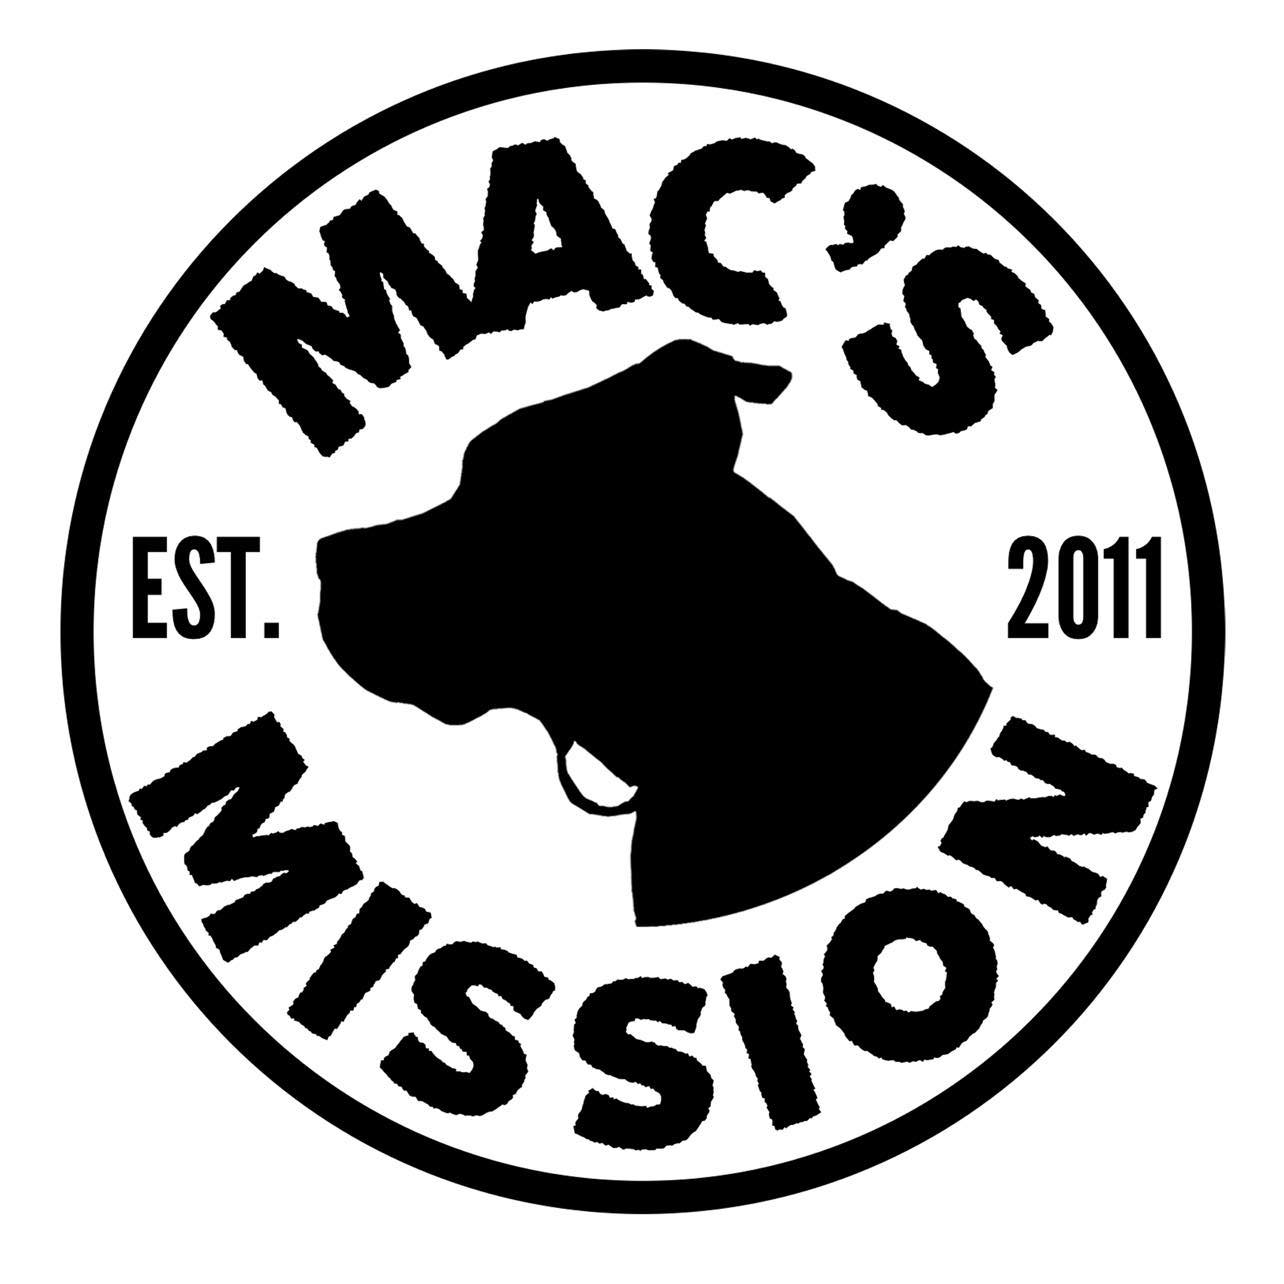 Mac's Mission